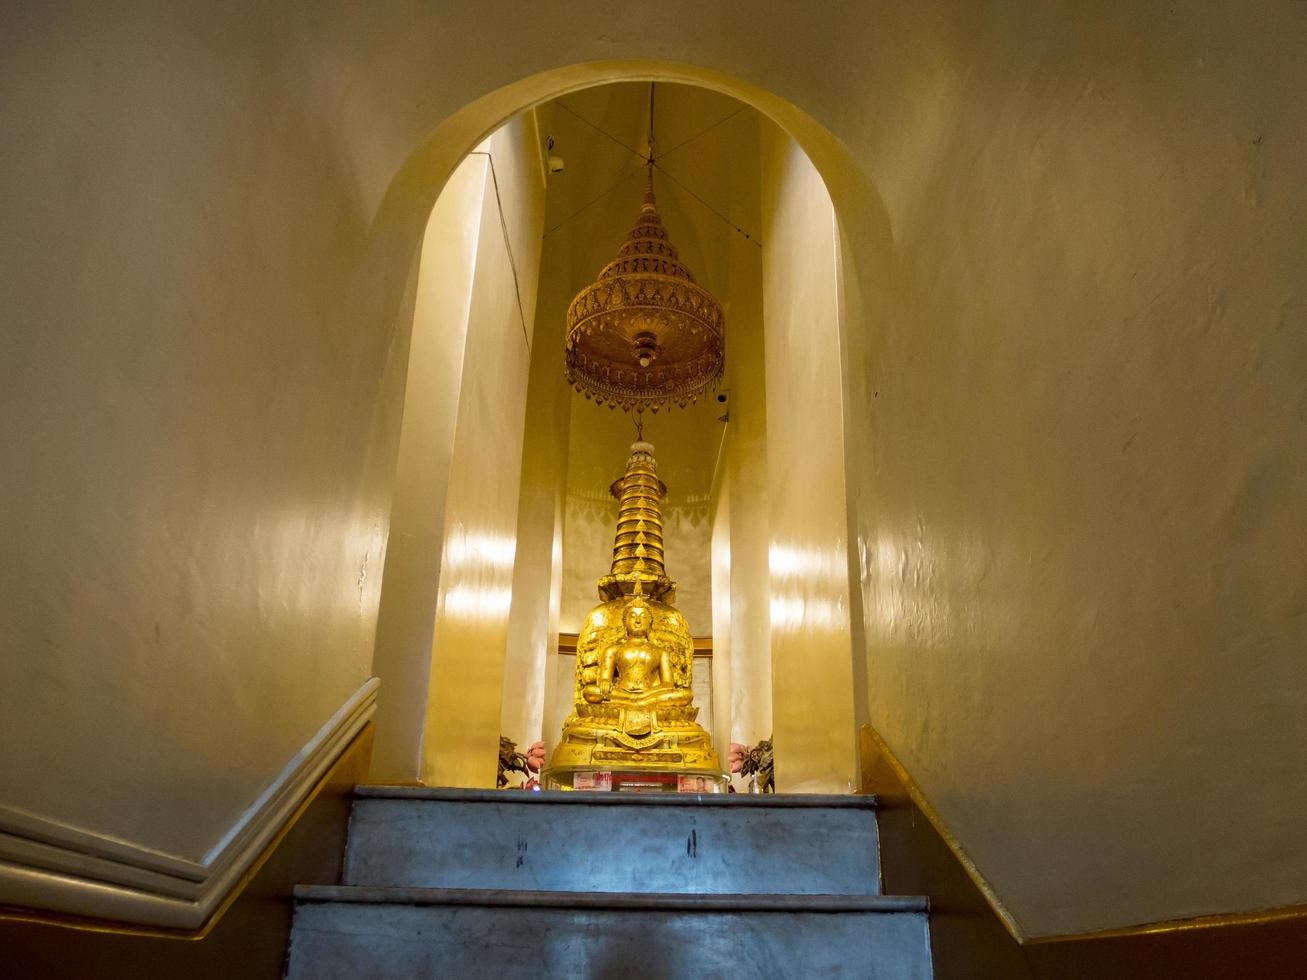 montagna dorata phu khao tong bangkok thailandia28 novembre 2018la costruzione è iniziata presso la piccola pagoda sulla collina durante il regno di re rama v. le reliquie sono state prese dallo sri lanka nella pagoda foto